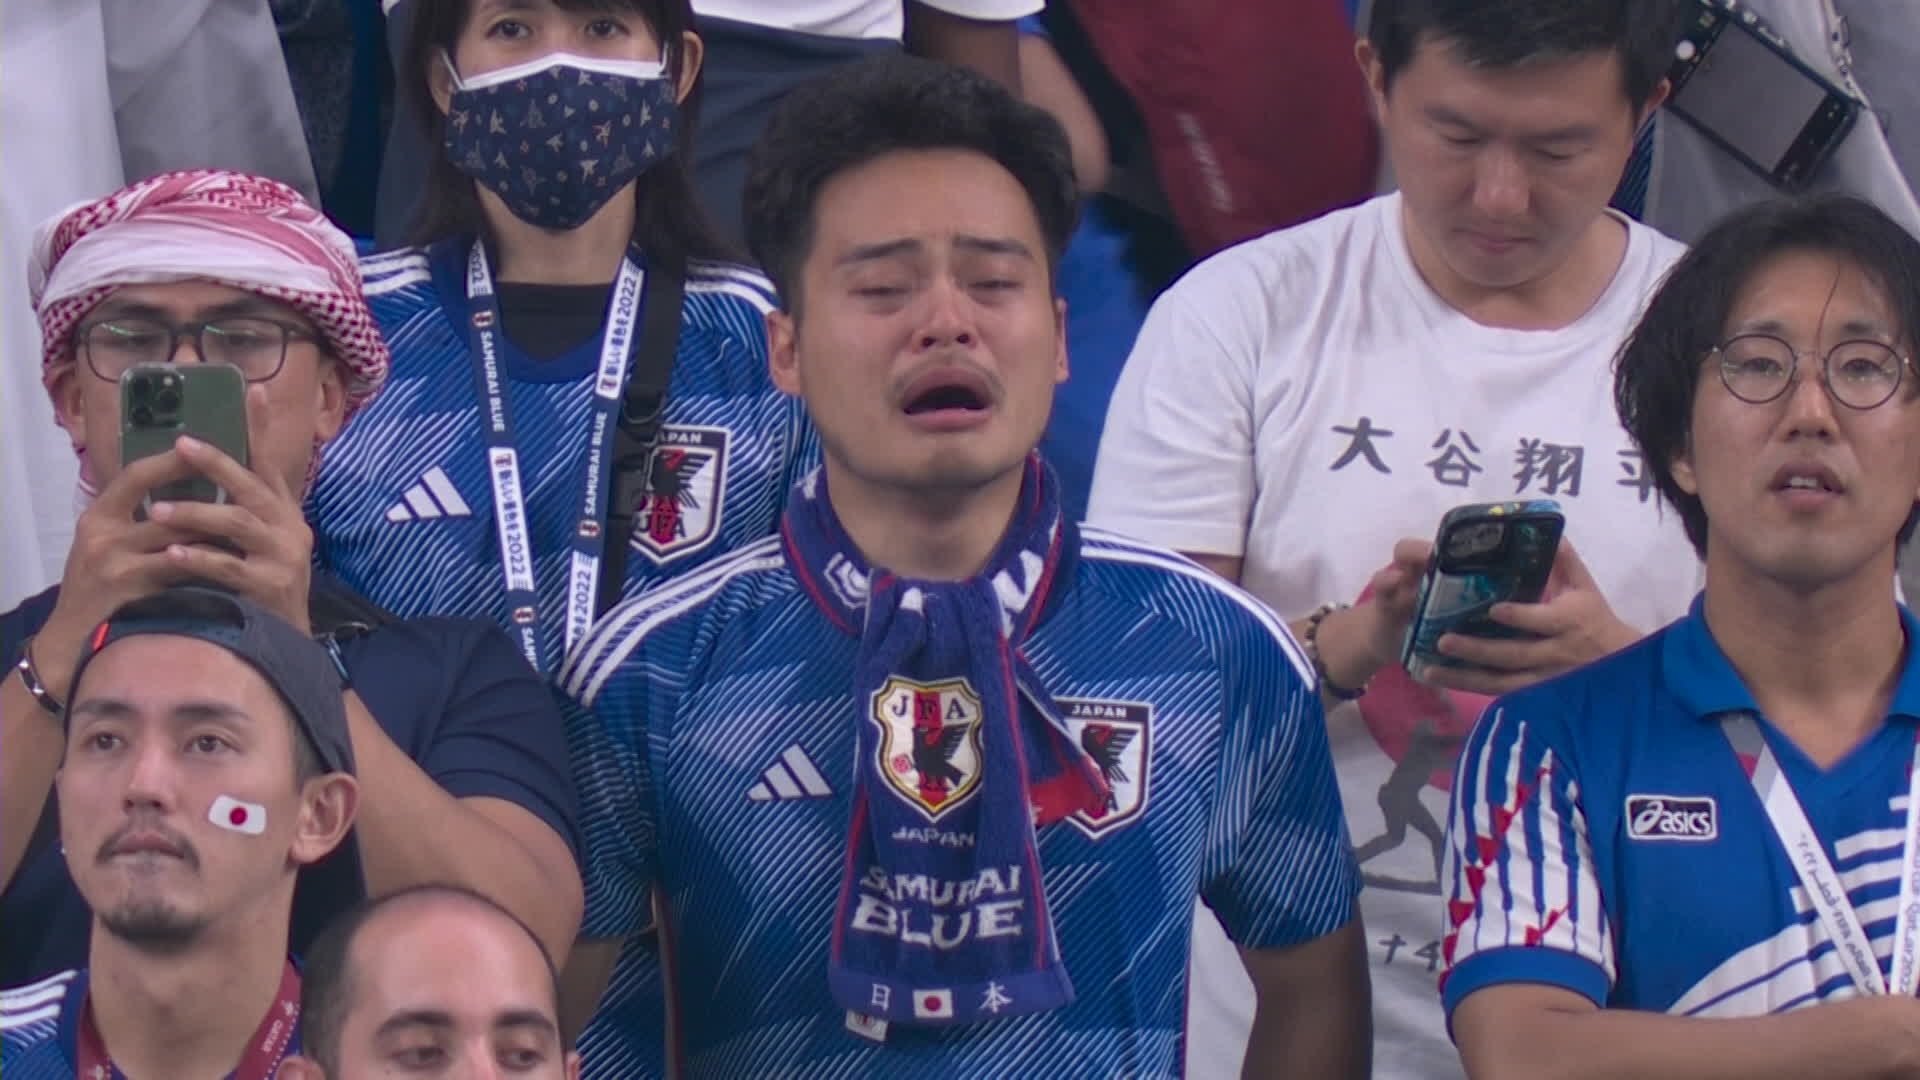 6일 열린 크로아티아전 경기에서 일본 대표팀의 패배가 확정되면서 크게 아쉬워하고 있는 현지 일본 응원단.  KBS 화면 갈무리